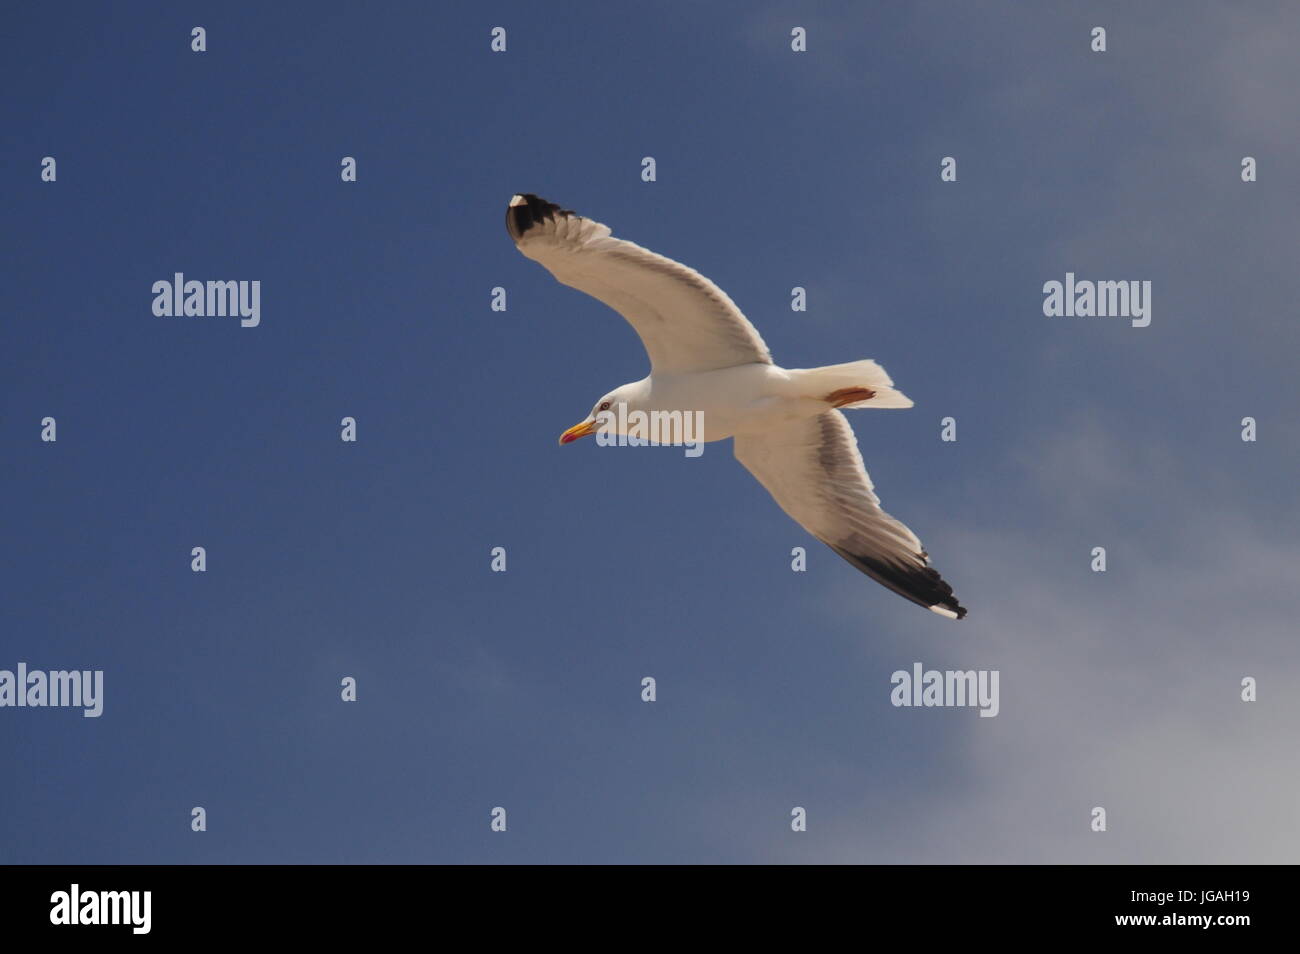 Seagull, sky, bird Stock Photo